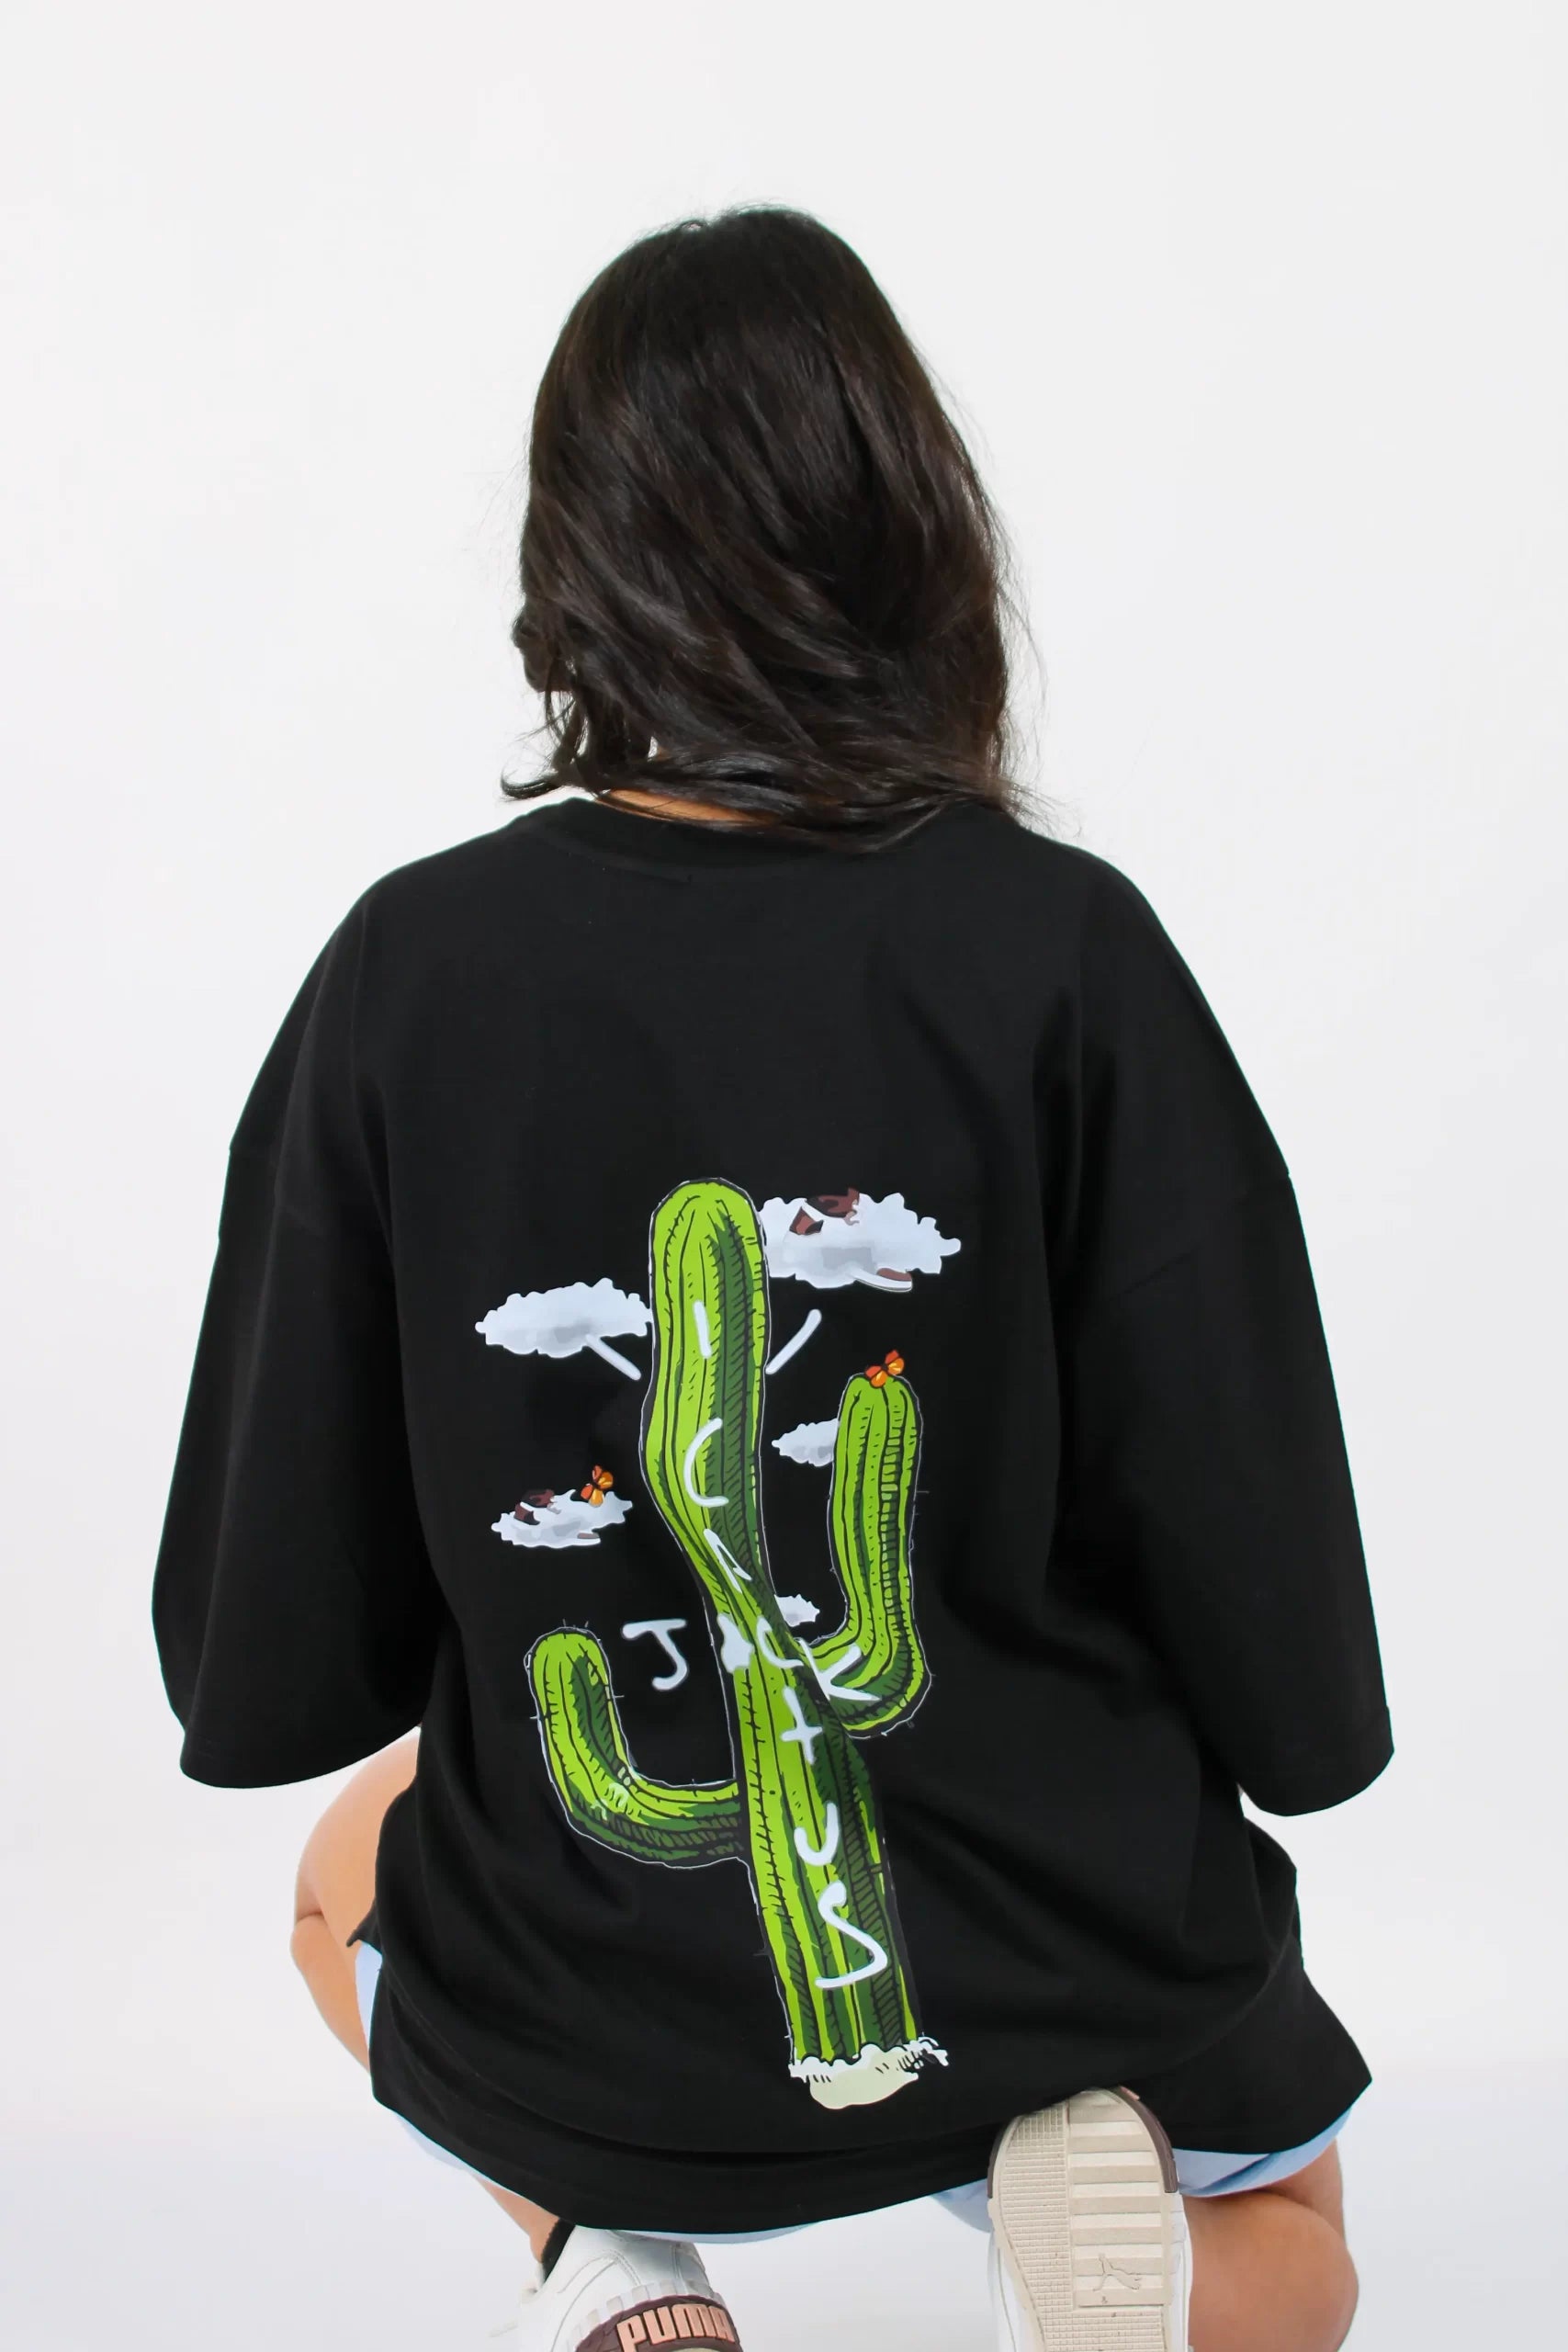 Cactus Jack T-shirt